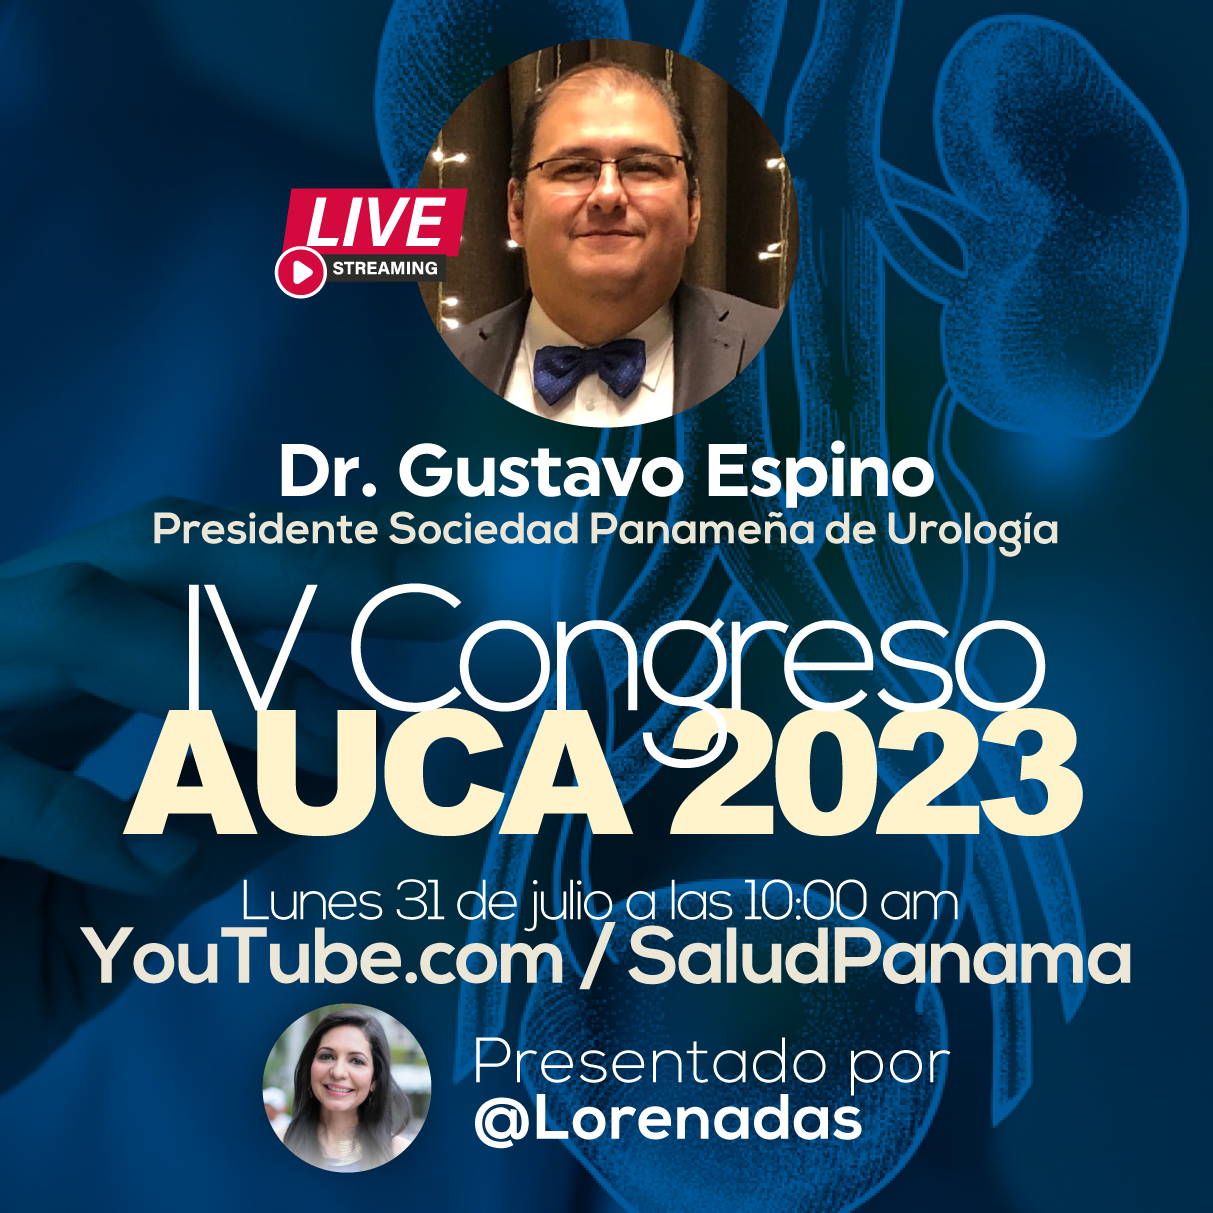 IV Congreso AUCA 2023 en Panamá